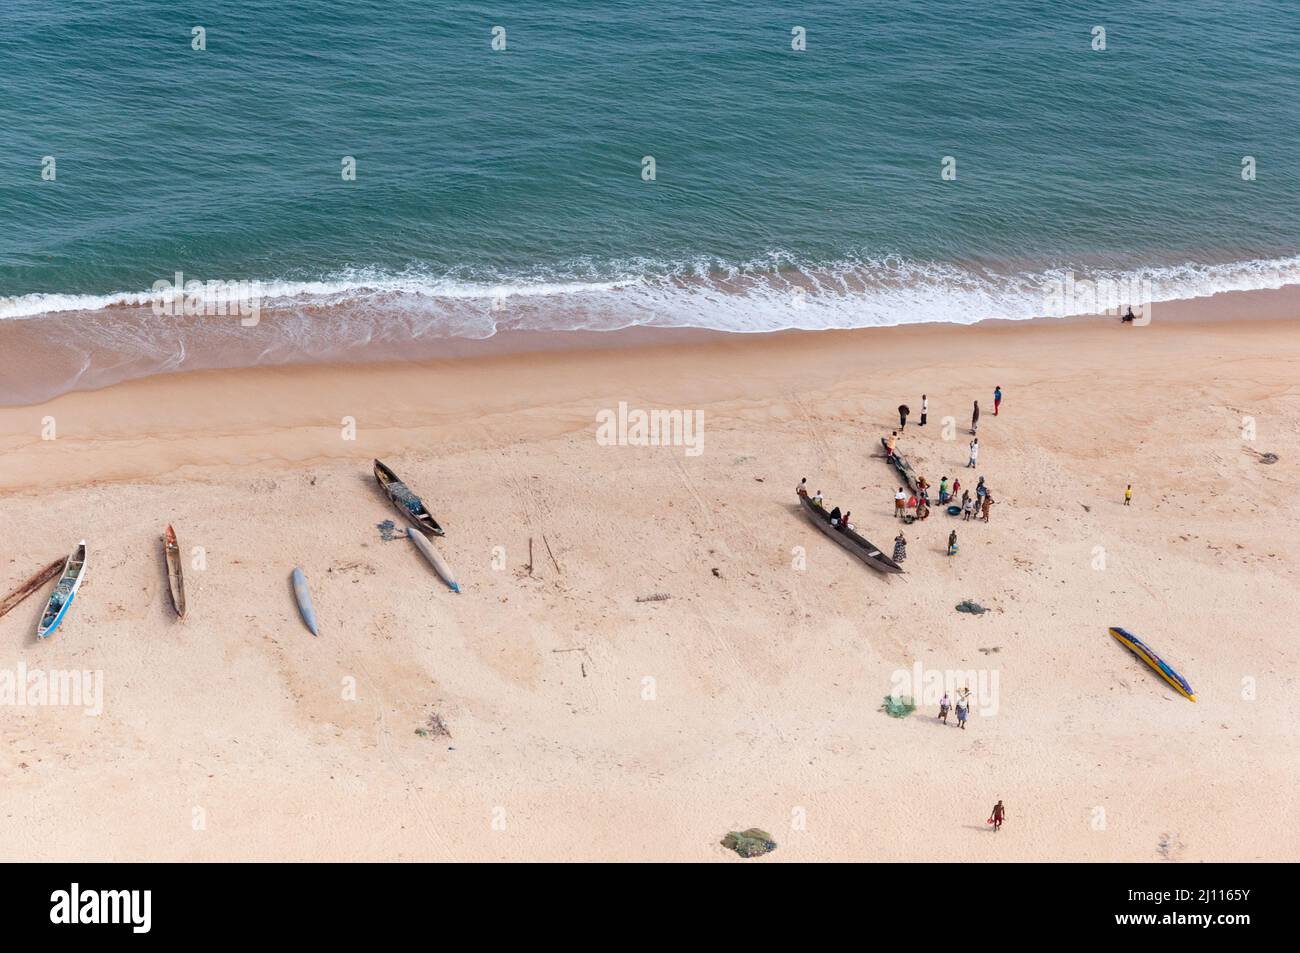 Ein liberianischer Strand voller Aktivitäten. Kanus, Menschen und Fischernetze wurden mittags auf einem Fährflug von Monrovia nach Freetown gefangen genommen. Stockfoto